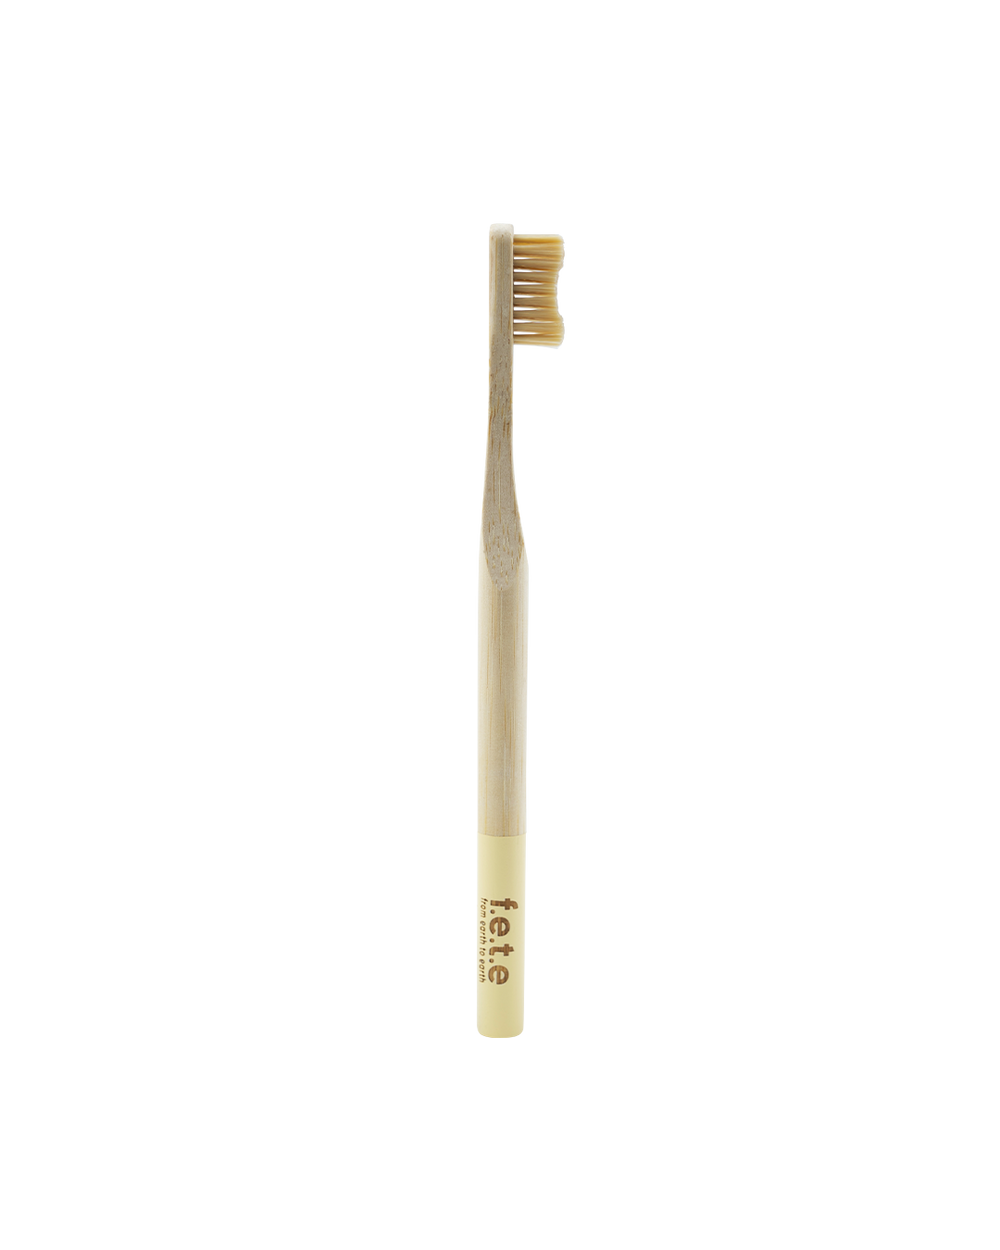 Bamboo toothbrush - soft fibers